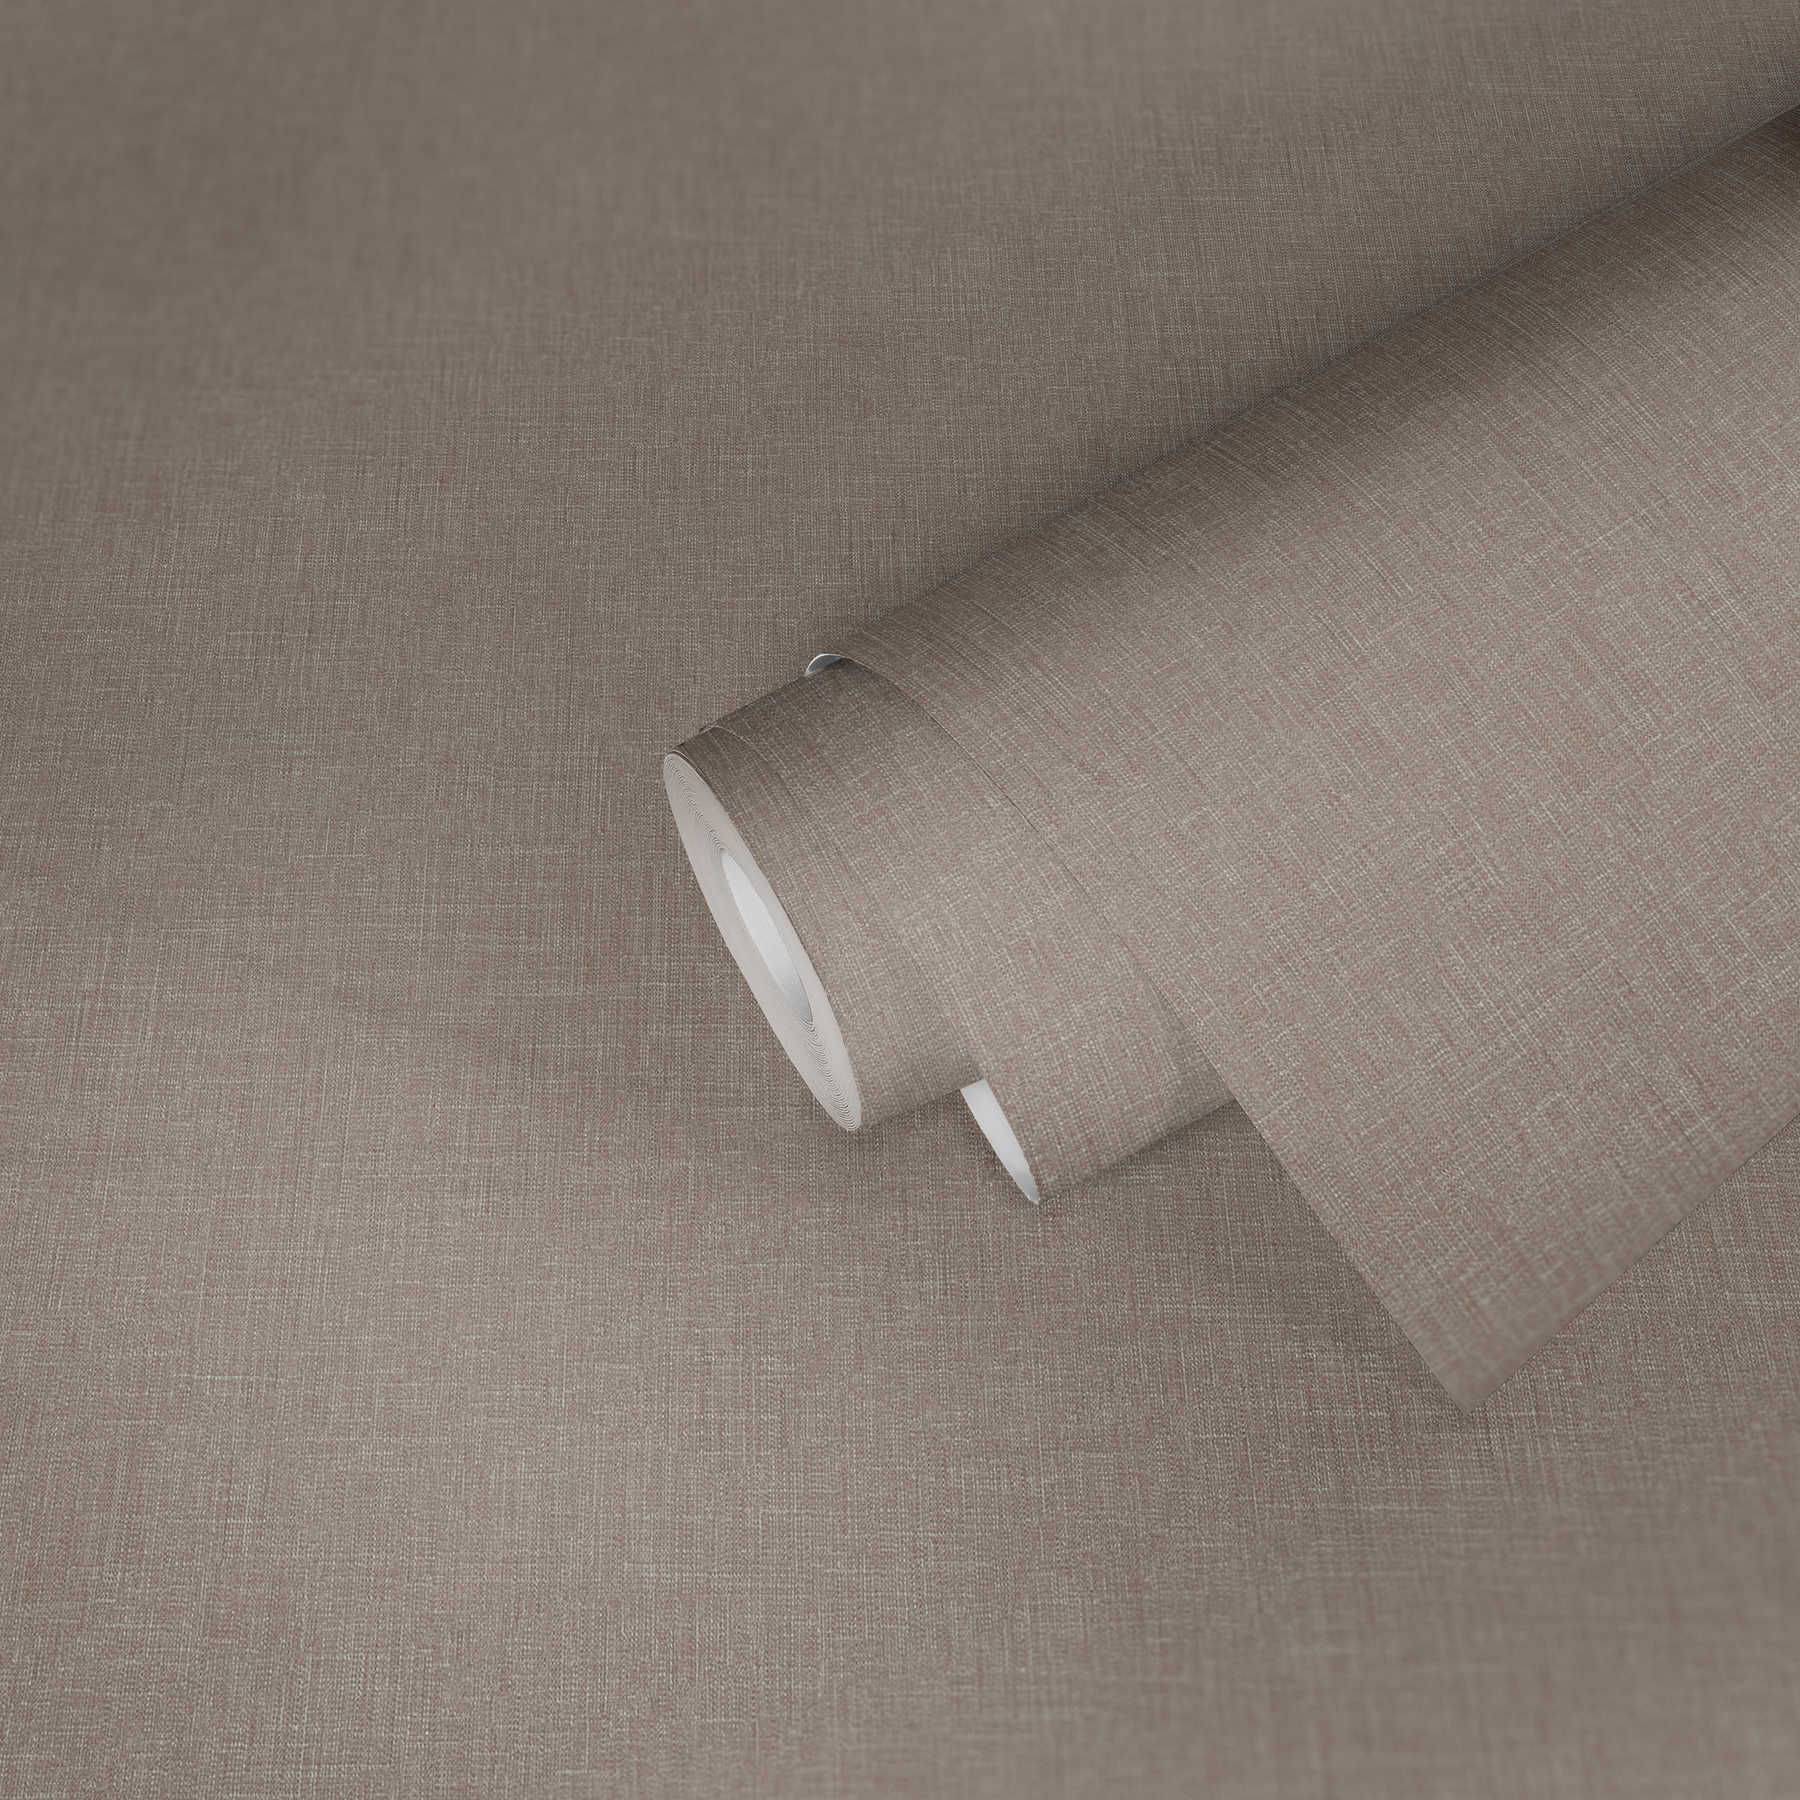             Papier peint chiné gris avec aspect textile & structure
        